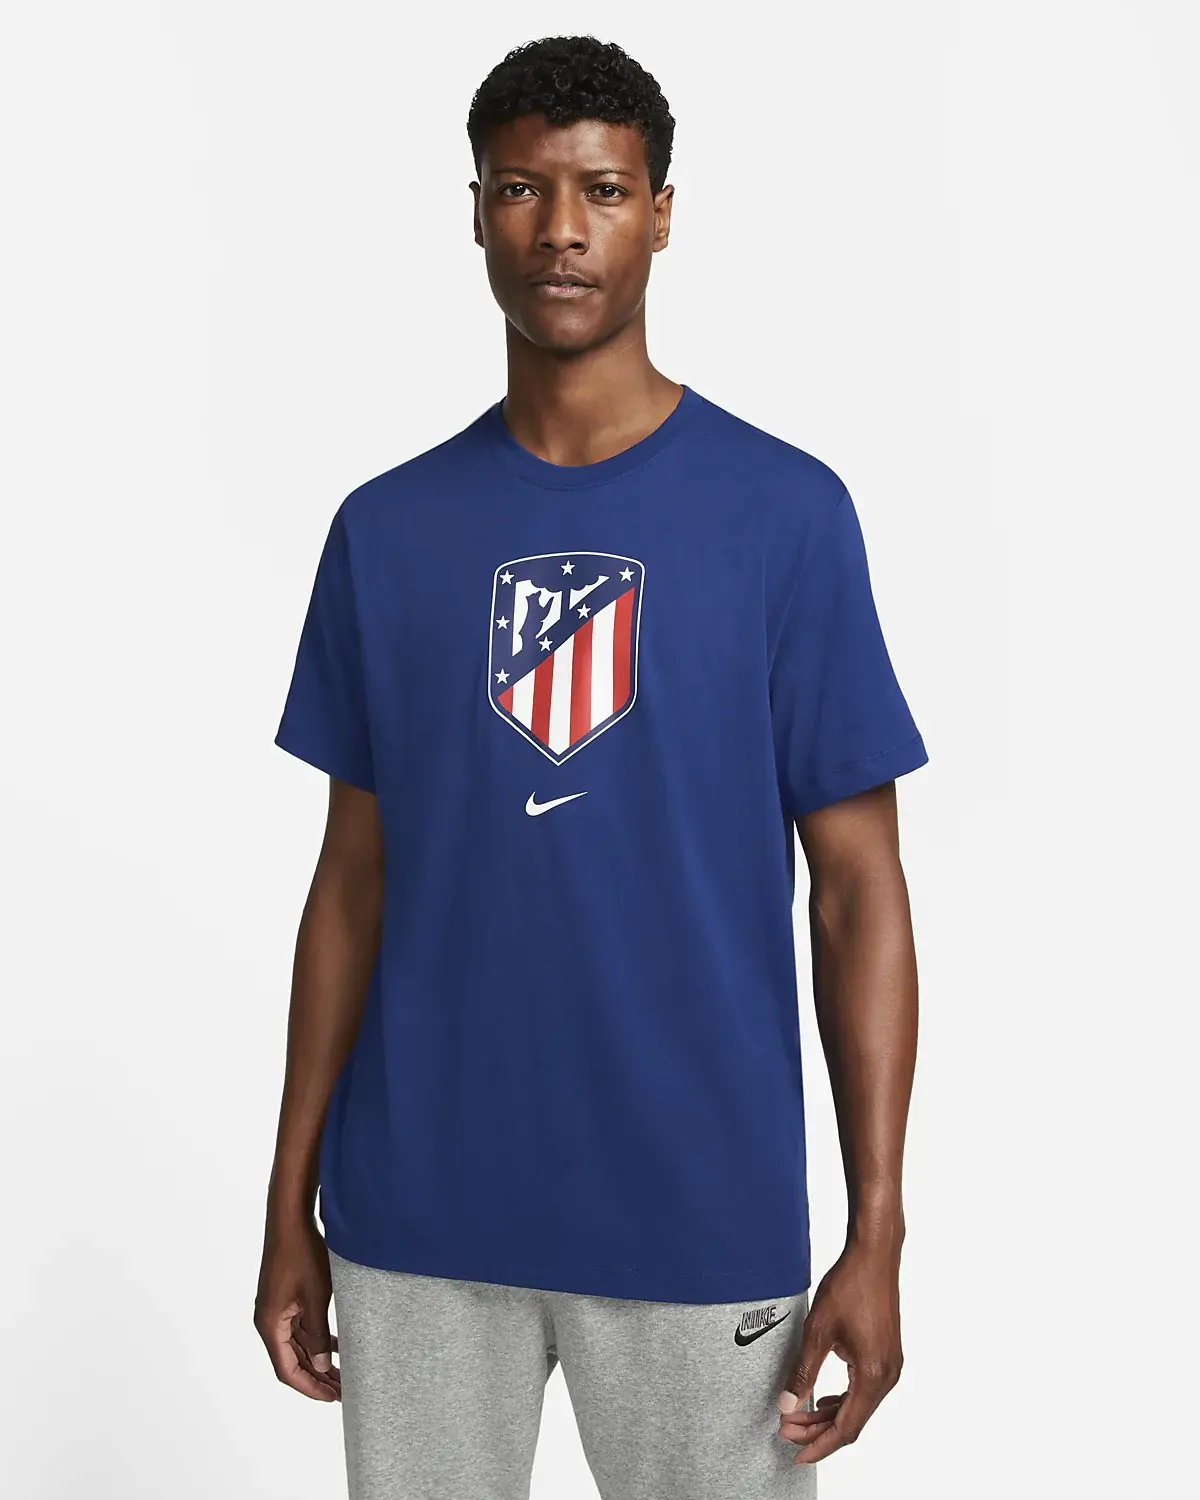 Nike Crest Atlético de Madrid. 1